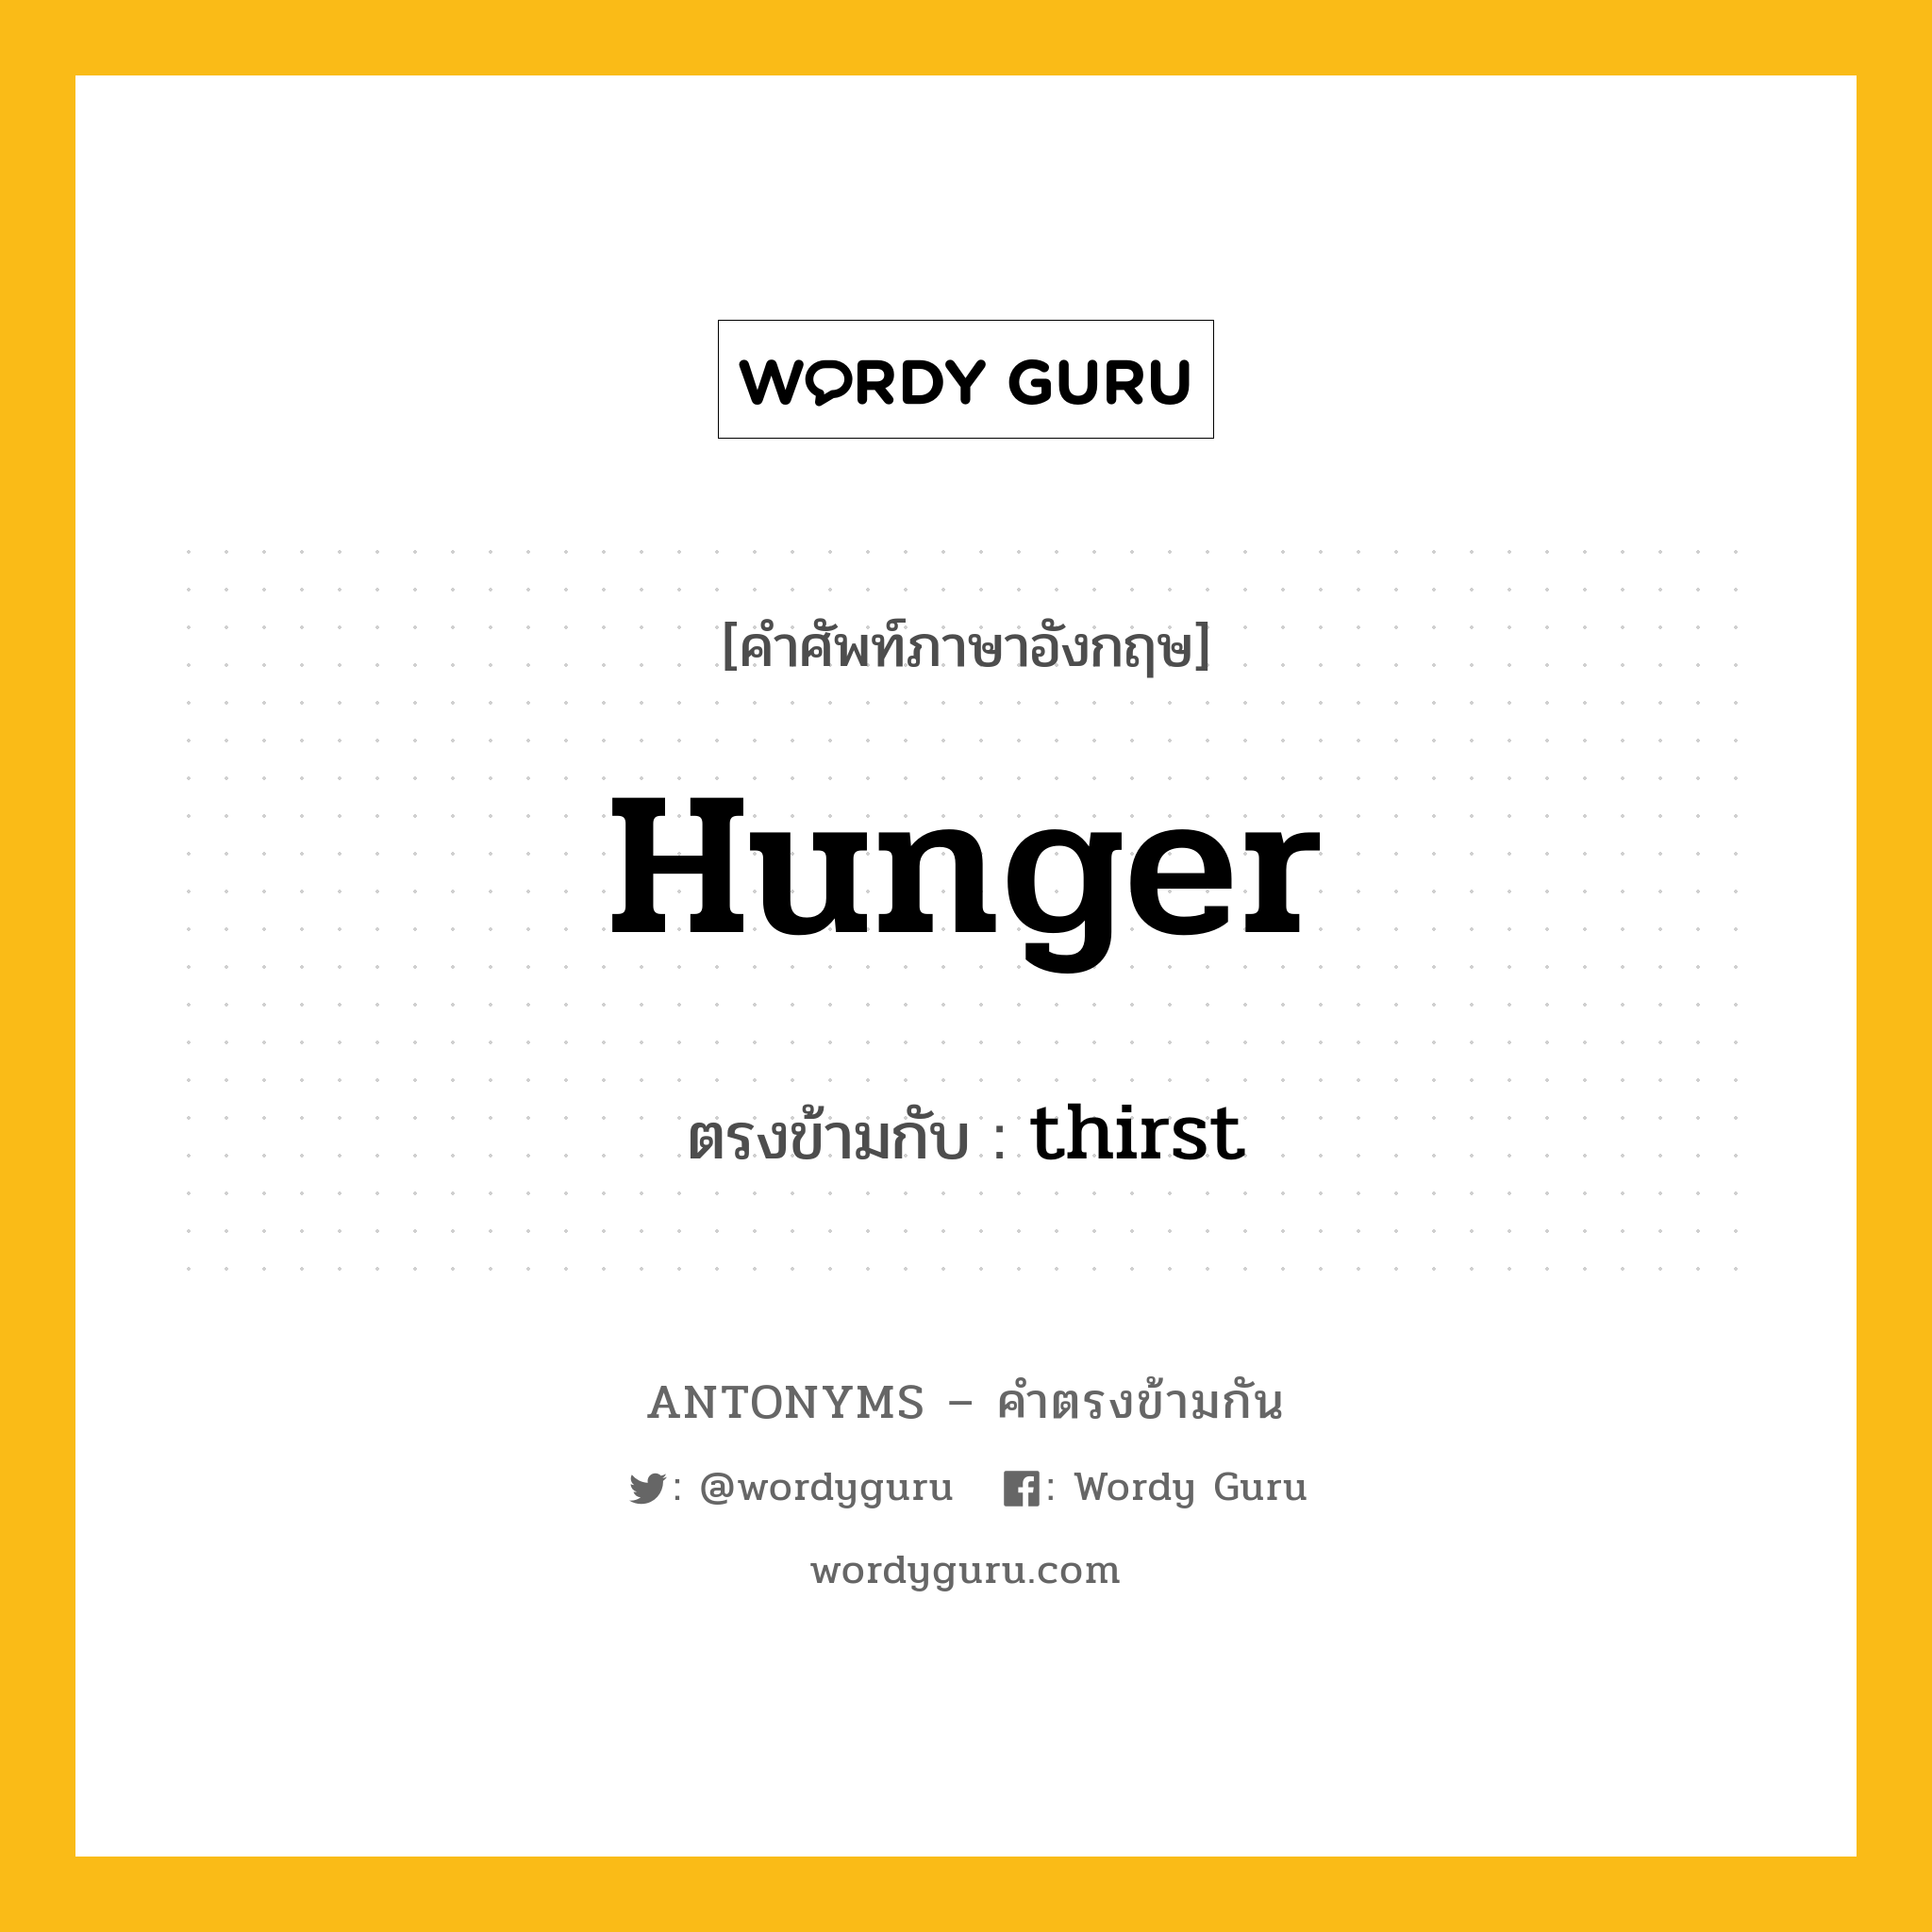 hunger เป็นคำตรงข้ามกับคำไหนบ้าง?, คำศัพท์ภาษาอังกฤษที่มีความหมายตรงข้ามกัน hunger ตรงข้ามกับ thirst หมวด thirst